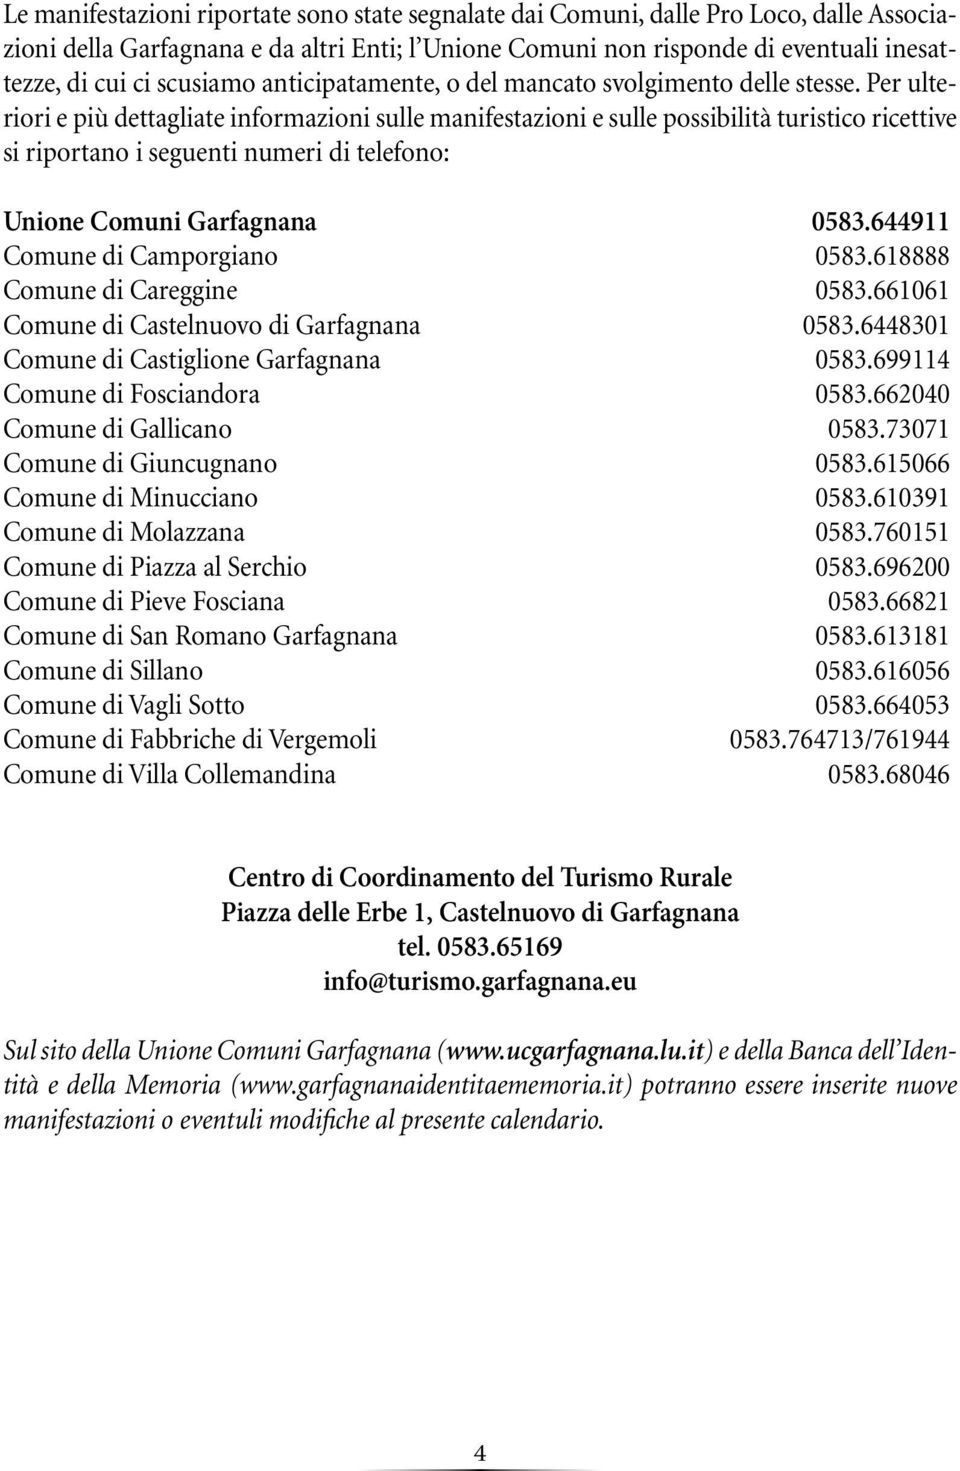 Per ulteriori e più dettagliate informazioni sulle manifestazioni e sulle possibilità turistico ricettive si riportano i seguenti numeri di telefono: Unione Comuni Garfagnana 0583.